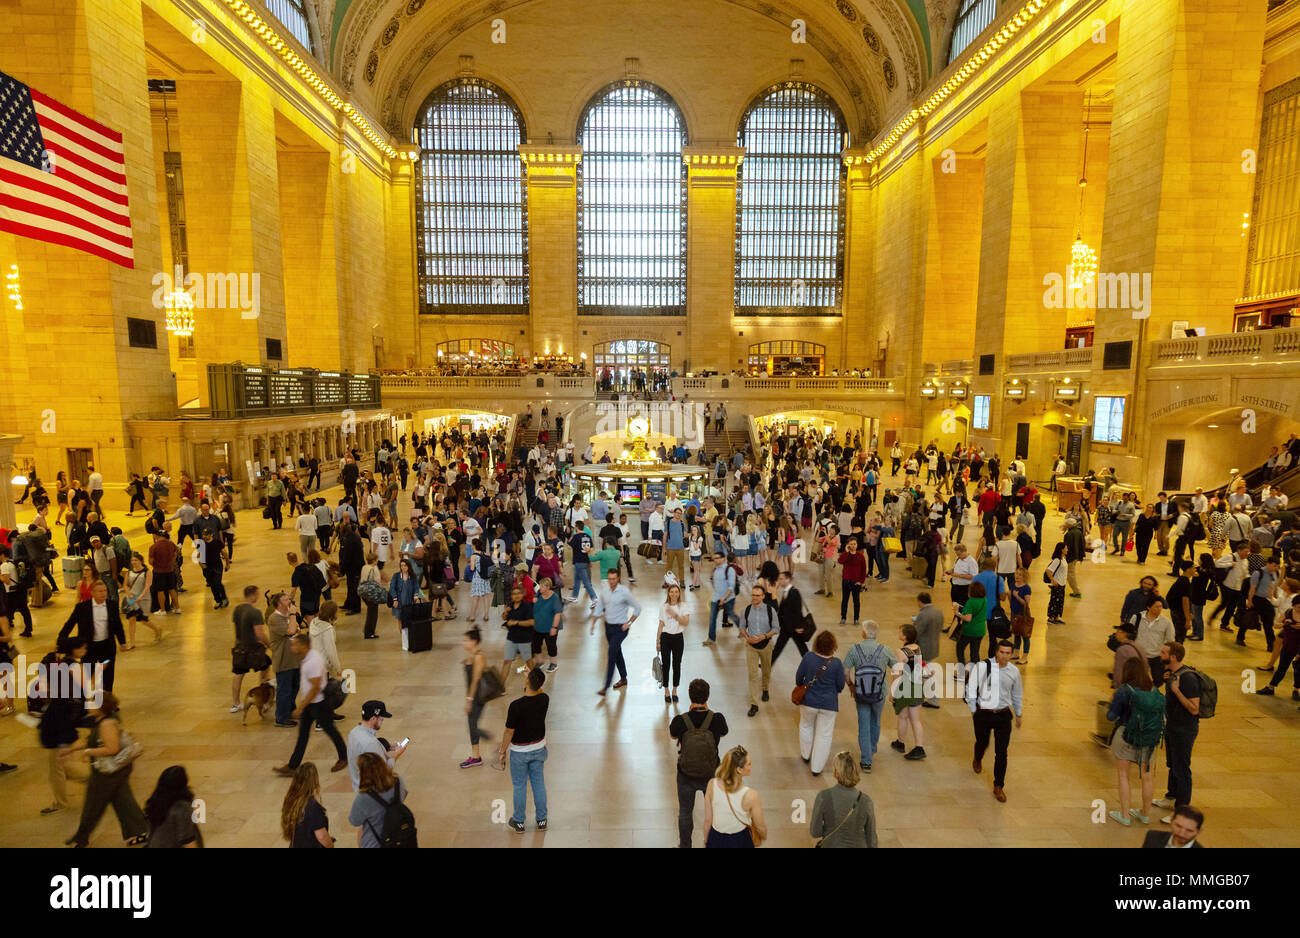 La Grand Central Station interno, con folle di persone nelle ore di punta, la Grand Central Station, New York City, Stati Uniti d'America Foto Stock